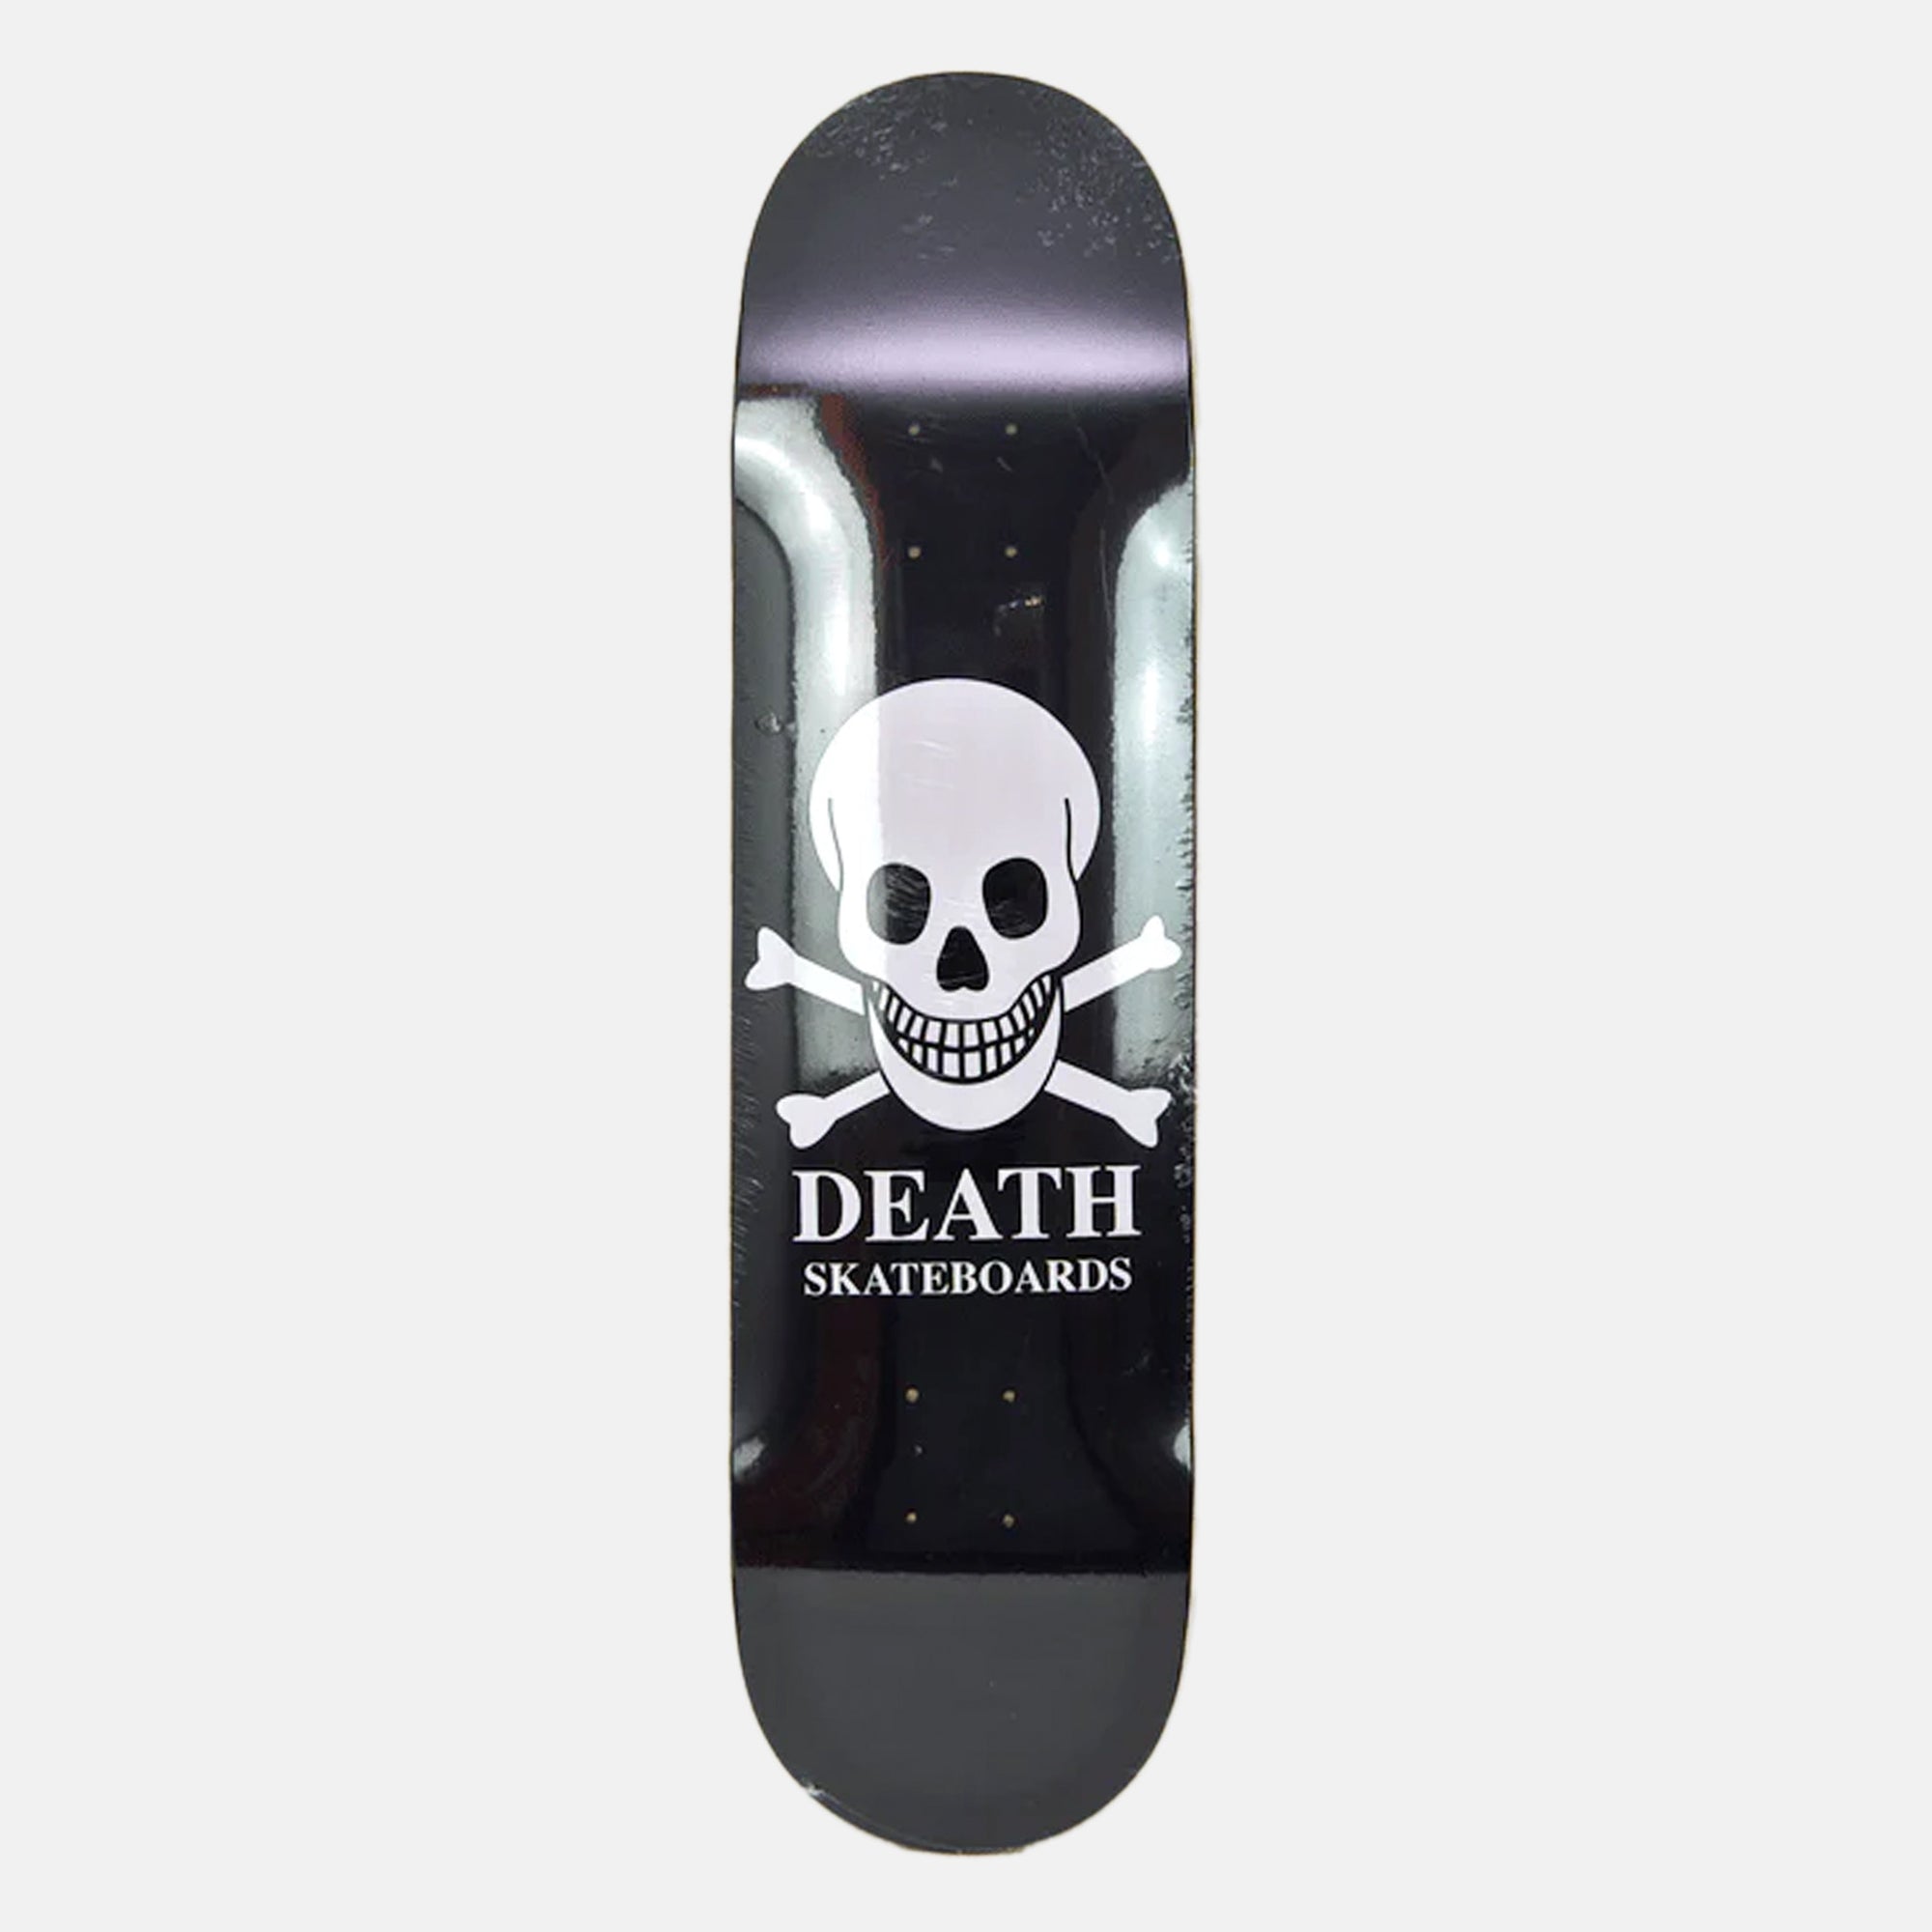 Death Skateboards - 8.25" OG Skull Deck (Black)